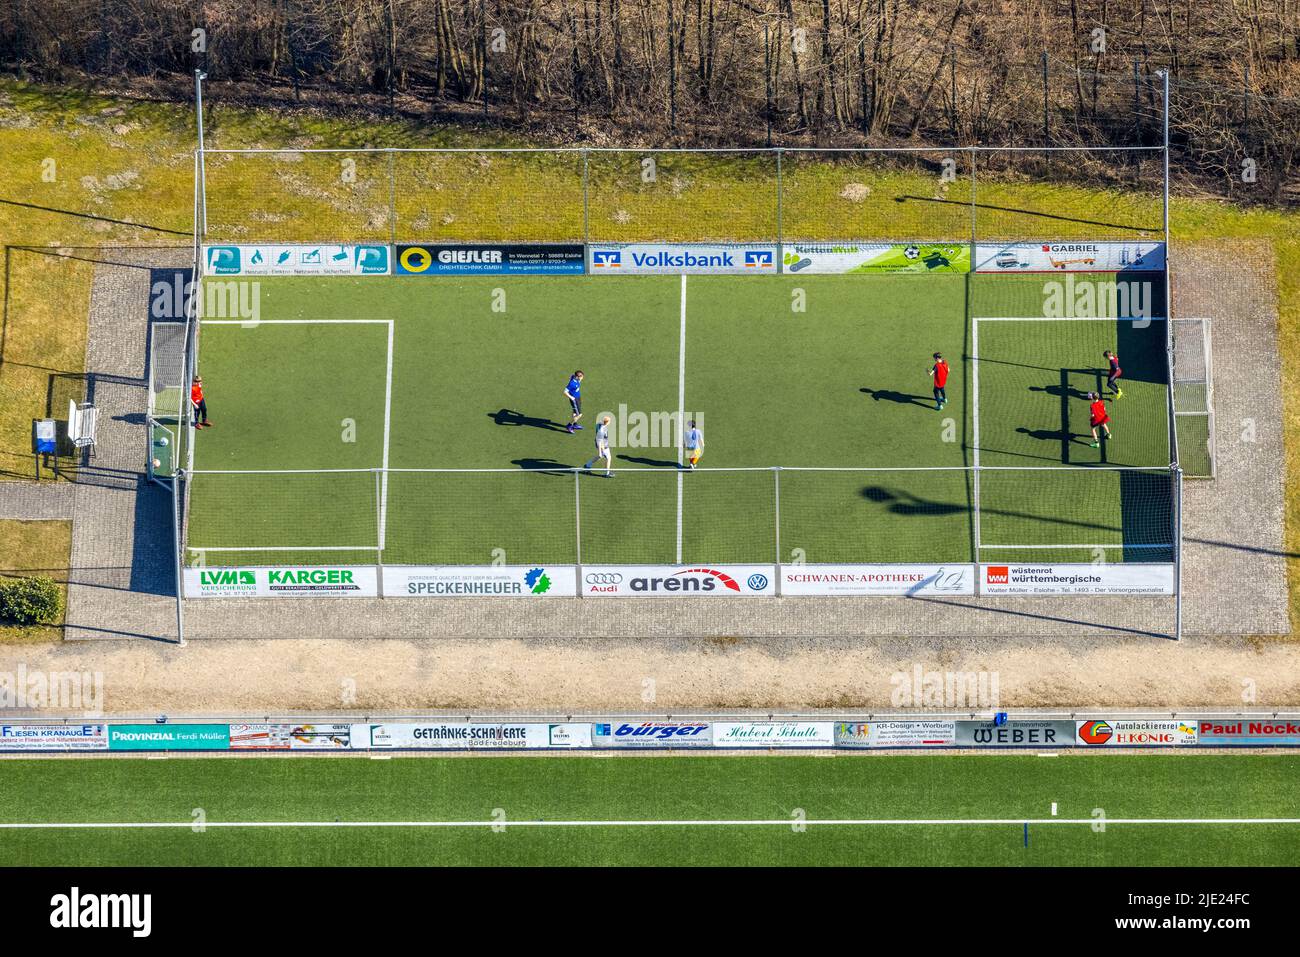 Vista aérea, zona de juegos cercada de fútbol con jugadores jóvenes, Eslohe, Eslohe, Sauerland, Renania del Norte-Westfalia, Alemania, Luftbild, eingezäunter Fußball Foto de stock